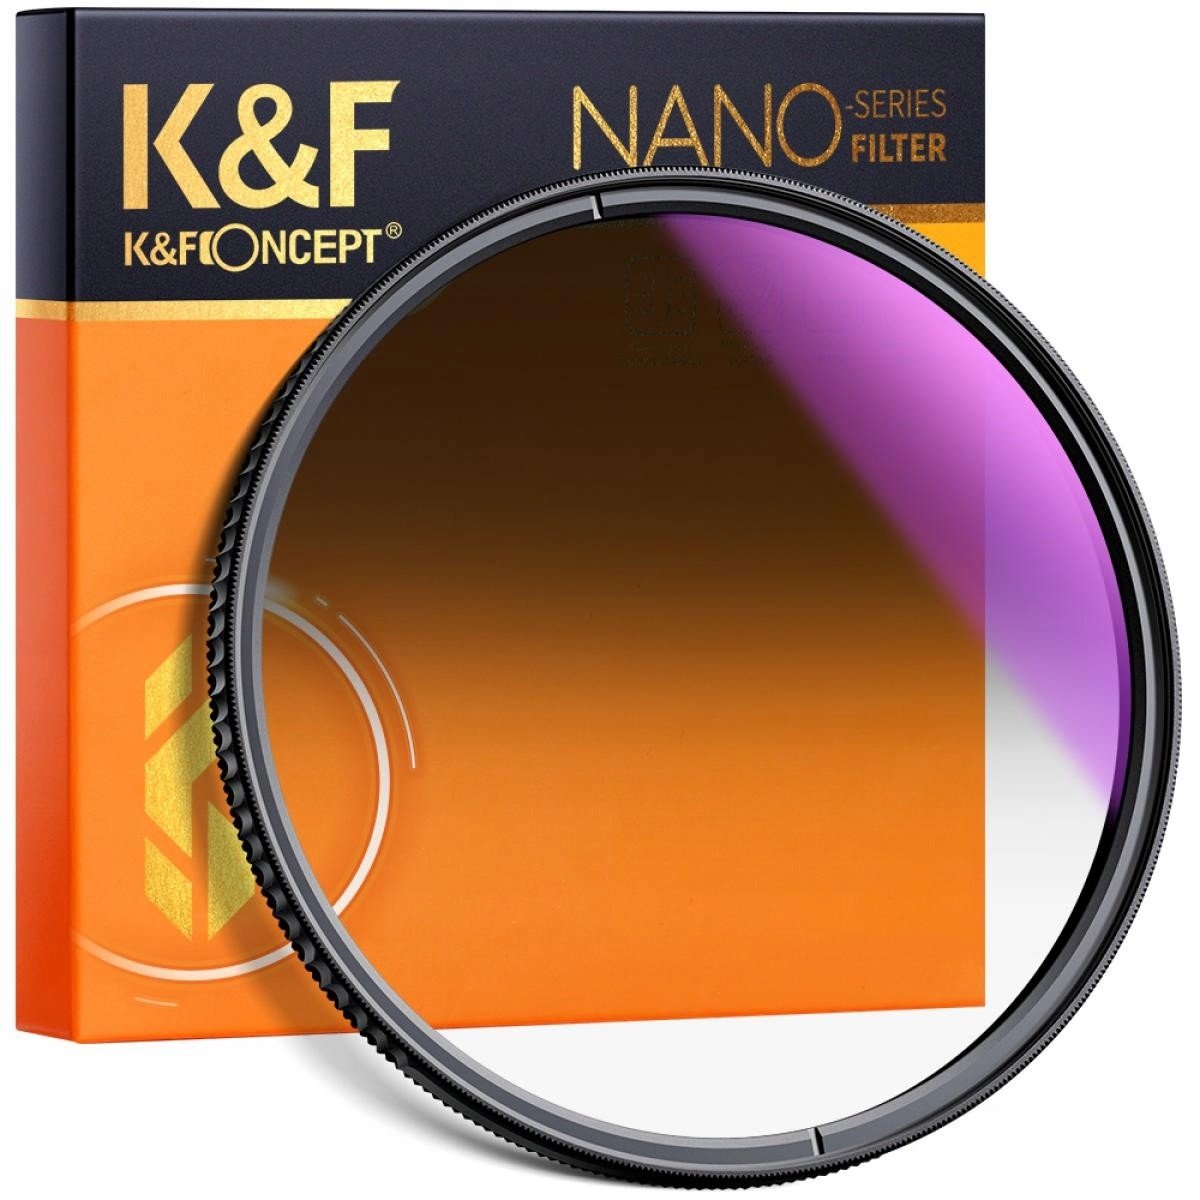 K&f Filtr šedý NanoX GND8 Soft 49mm